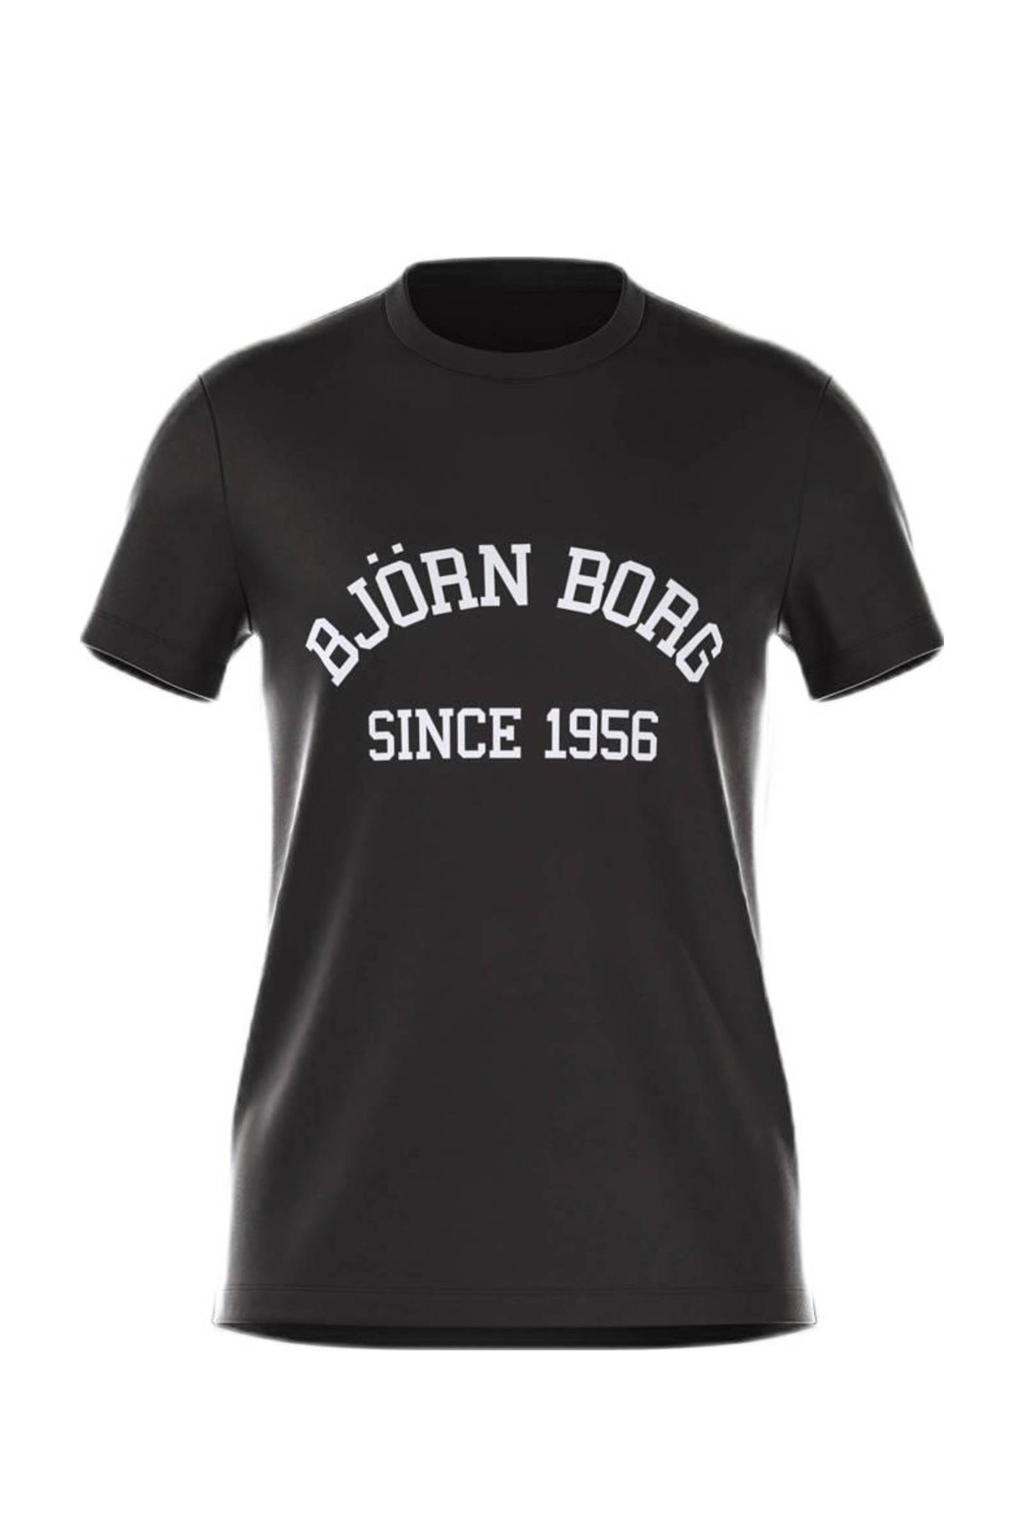 Zwart en witte heren Björn Borg T-shirt van katoen met tekst print, korte mouwen en ronde hals